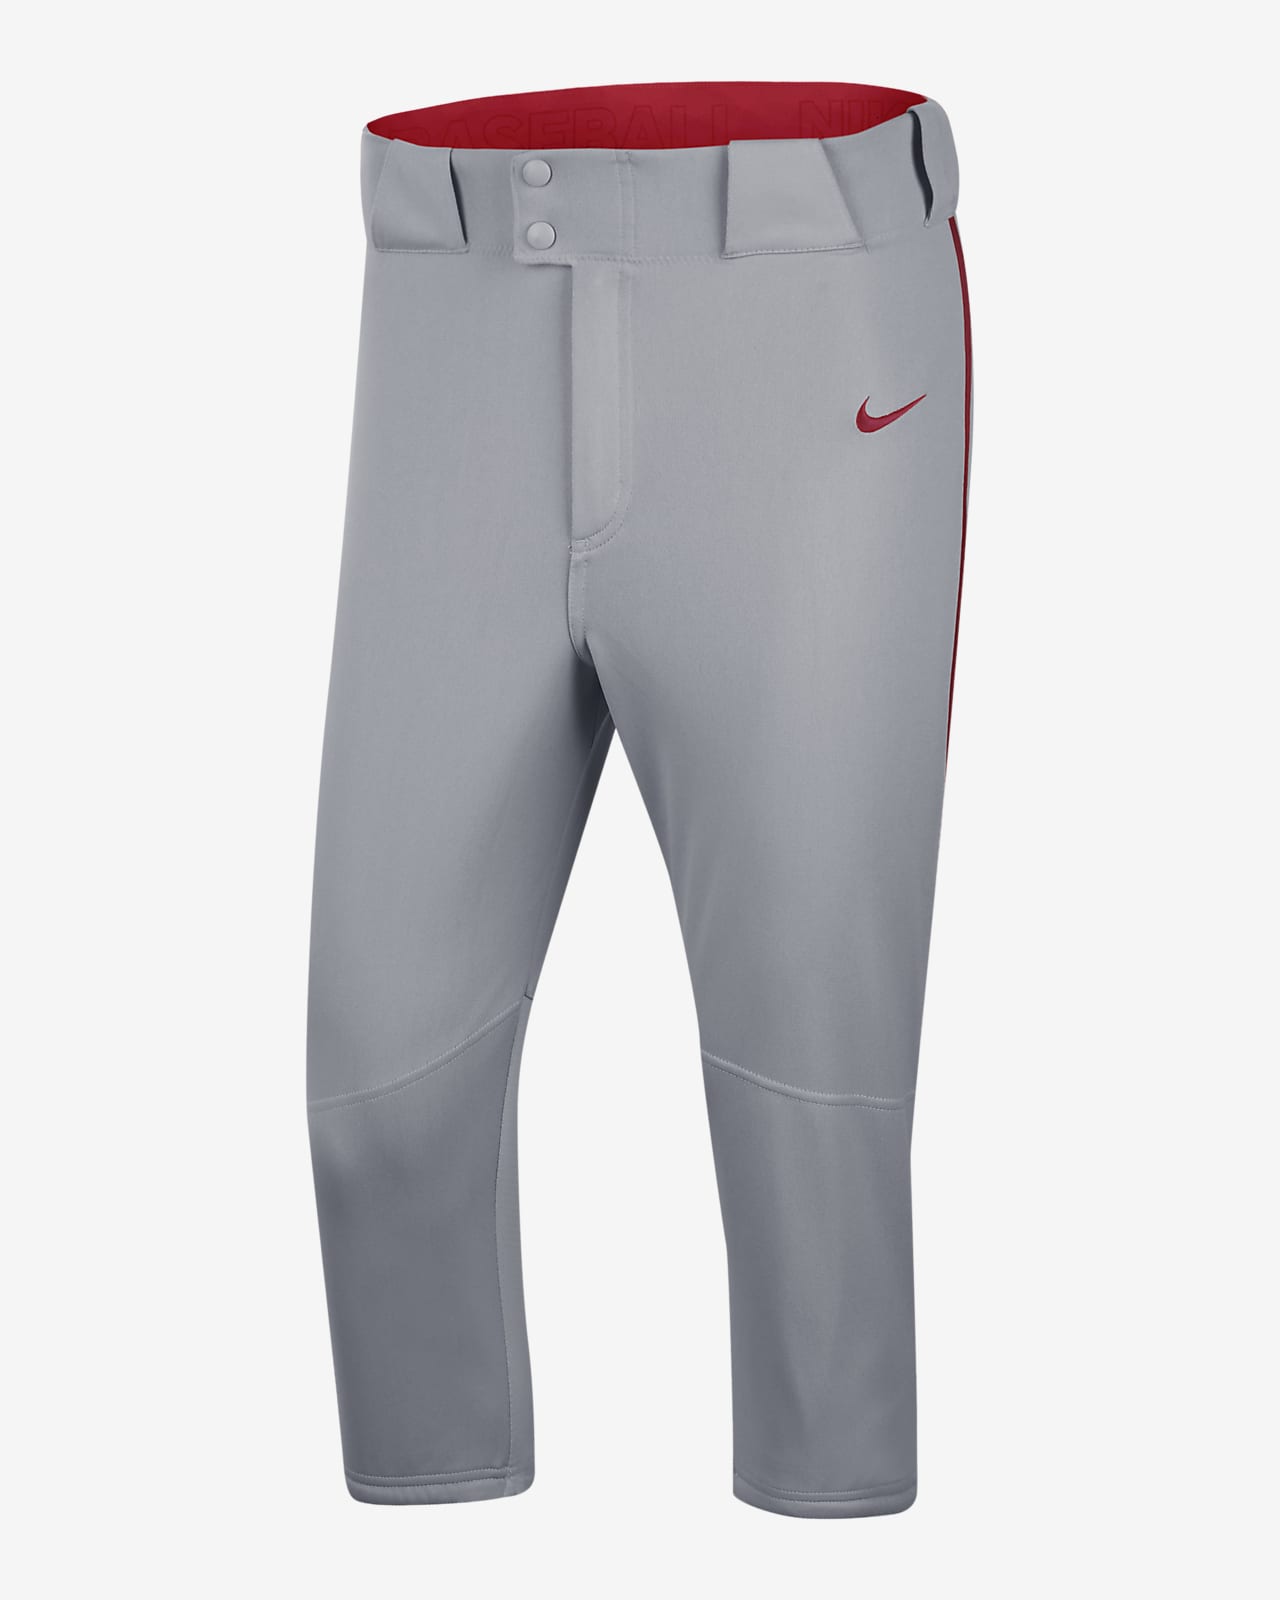 Nike Vapor Select Men's High Baseball Pants